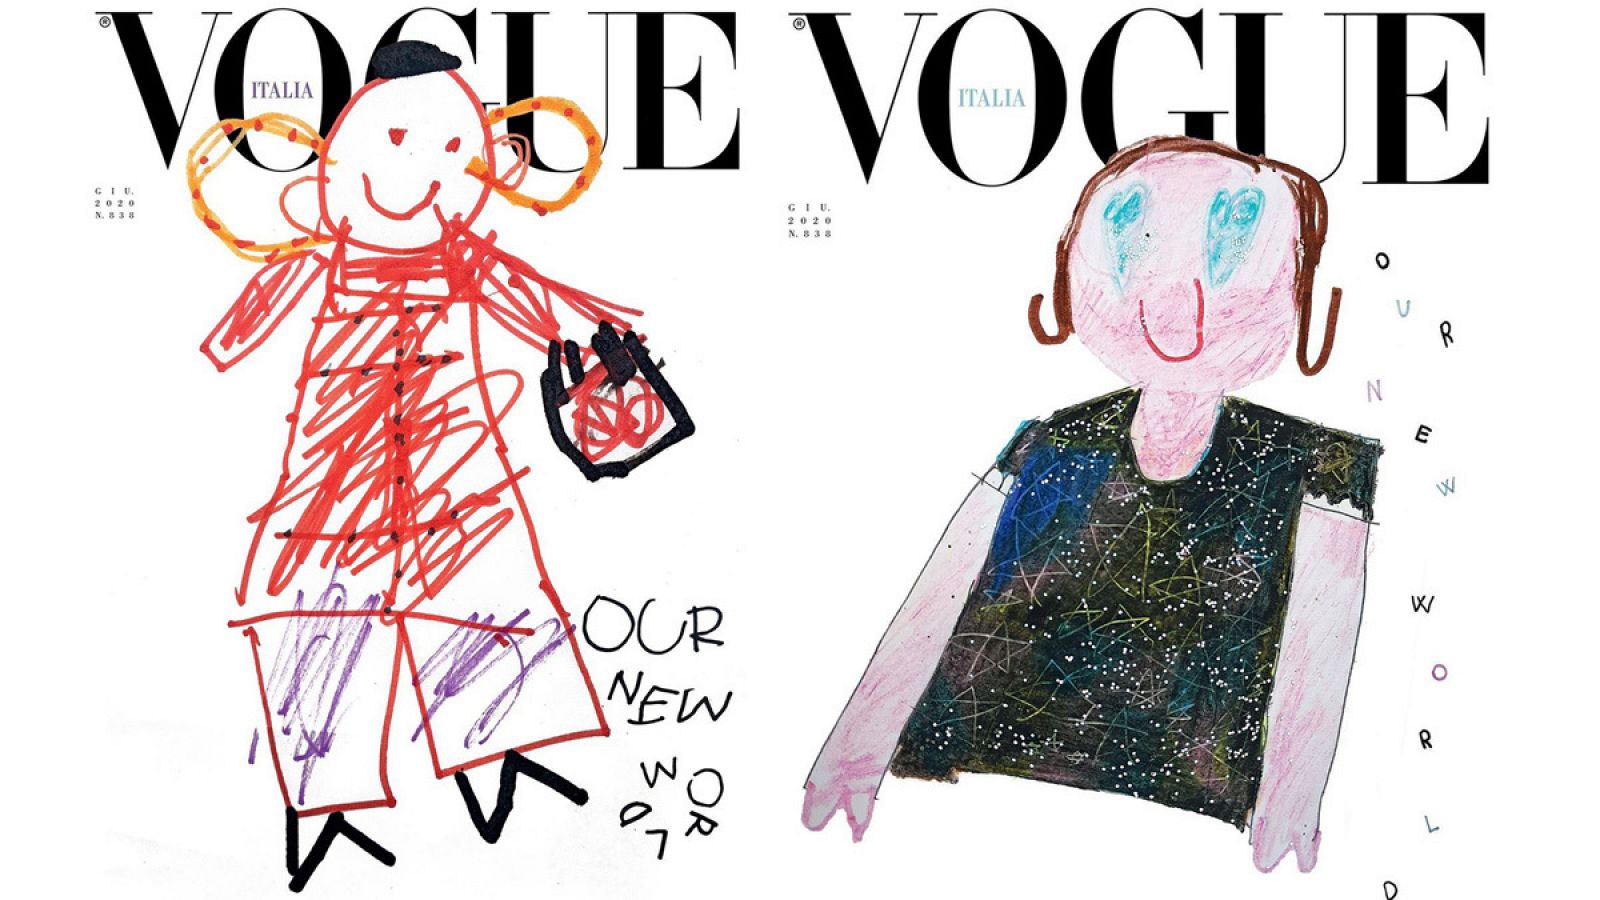 Vogue cede su portada a los niños, nuestro futuro | RTVE